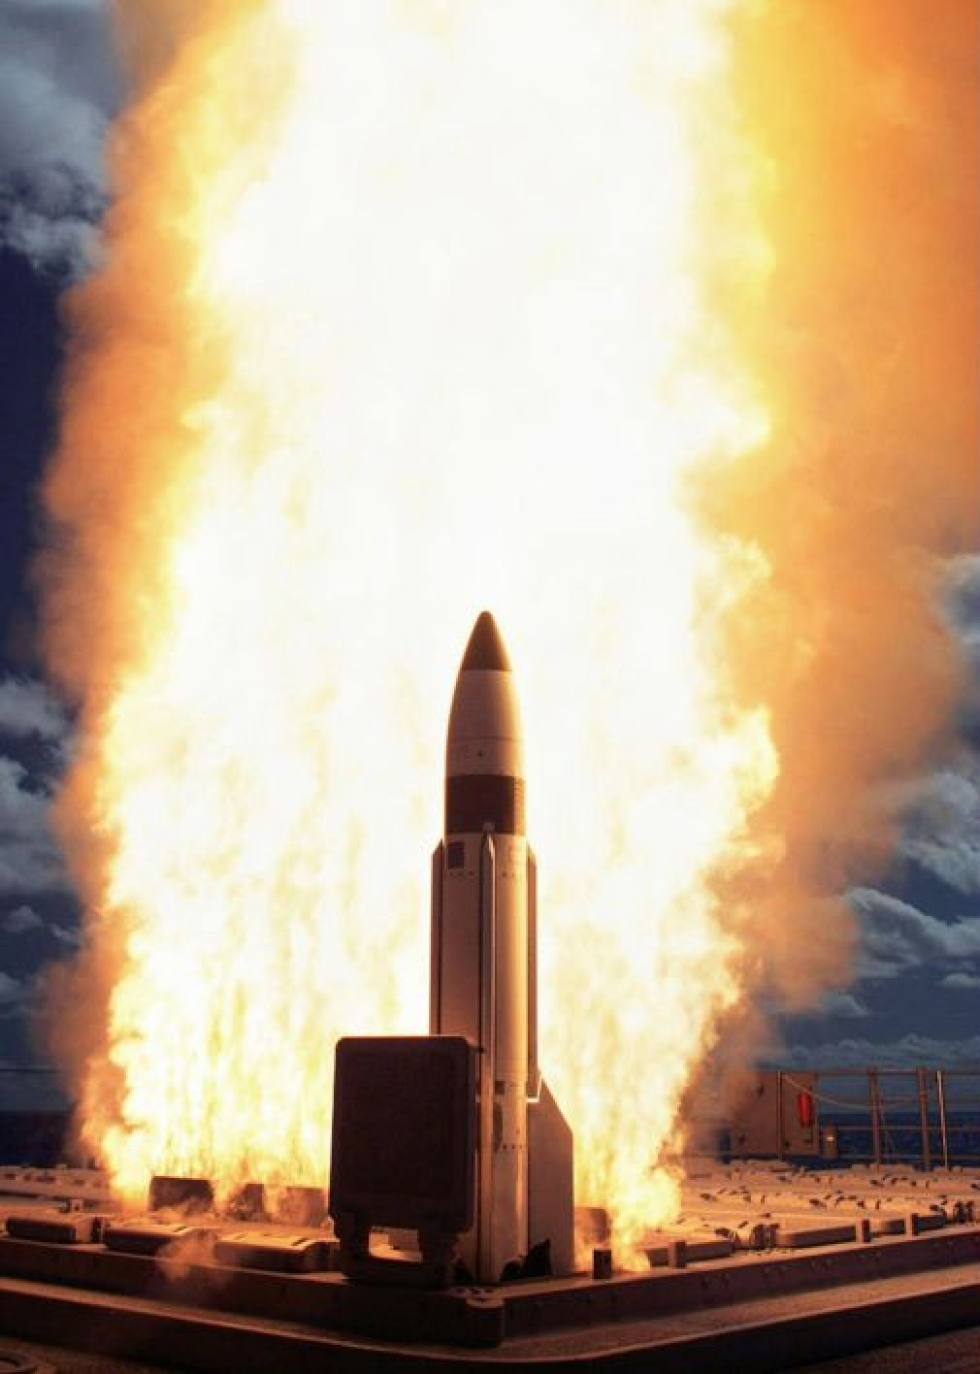 Venäjän duuma hyväksyi ydinaserajoitussopimuksen jatkamisen viidellä vuodella. USA:n laivaston arkistokuvassa ohjuslaukaisu vuodelta 2005.
LEHTIKUVA / AFP PHOTO/US NAVY/HO